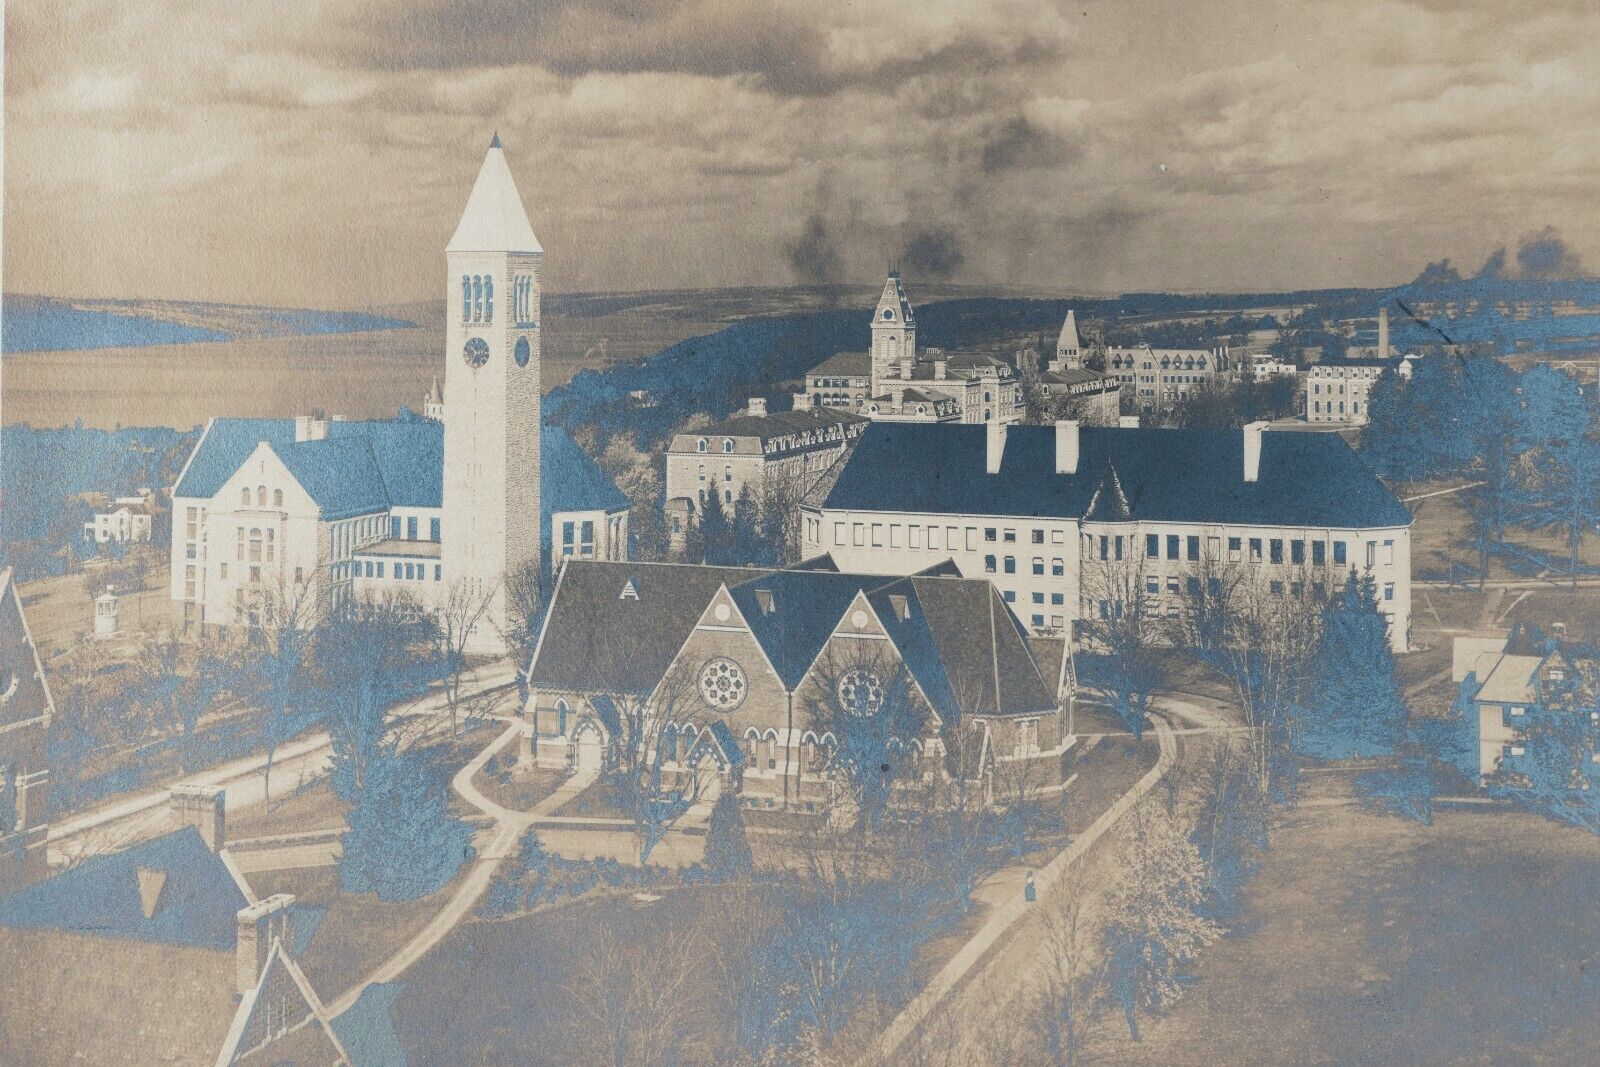 Cornel University Campus Ithaca New York 1800's Photo, Signed Ithaca 9.5 x 7.5